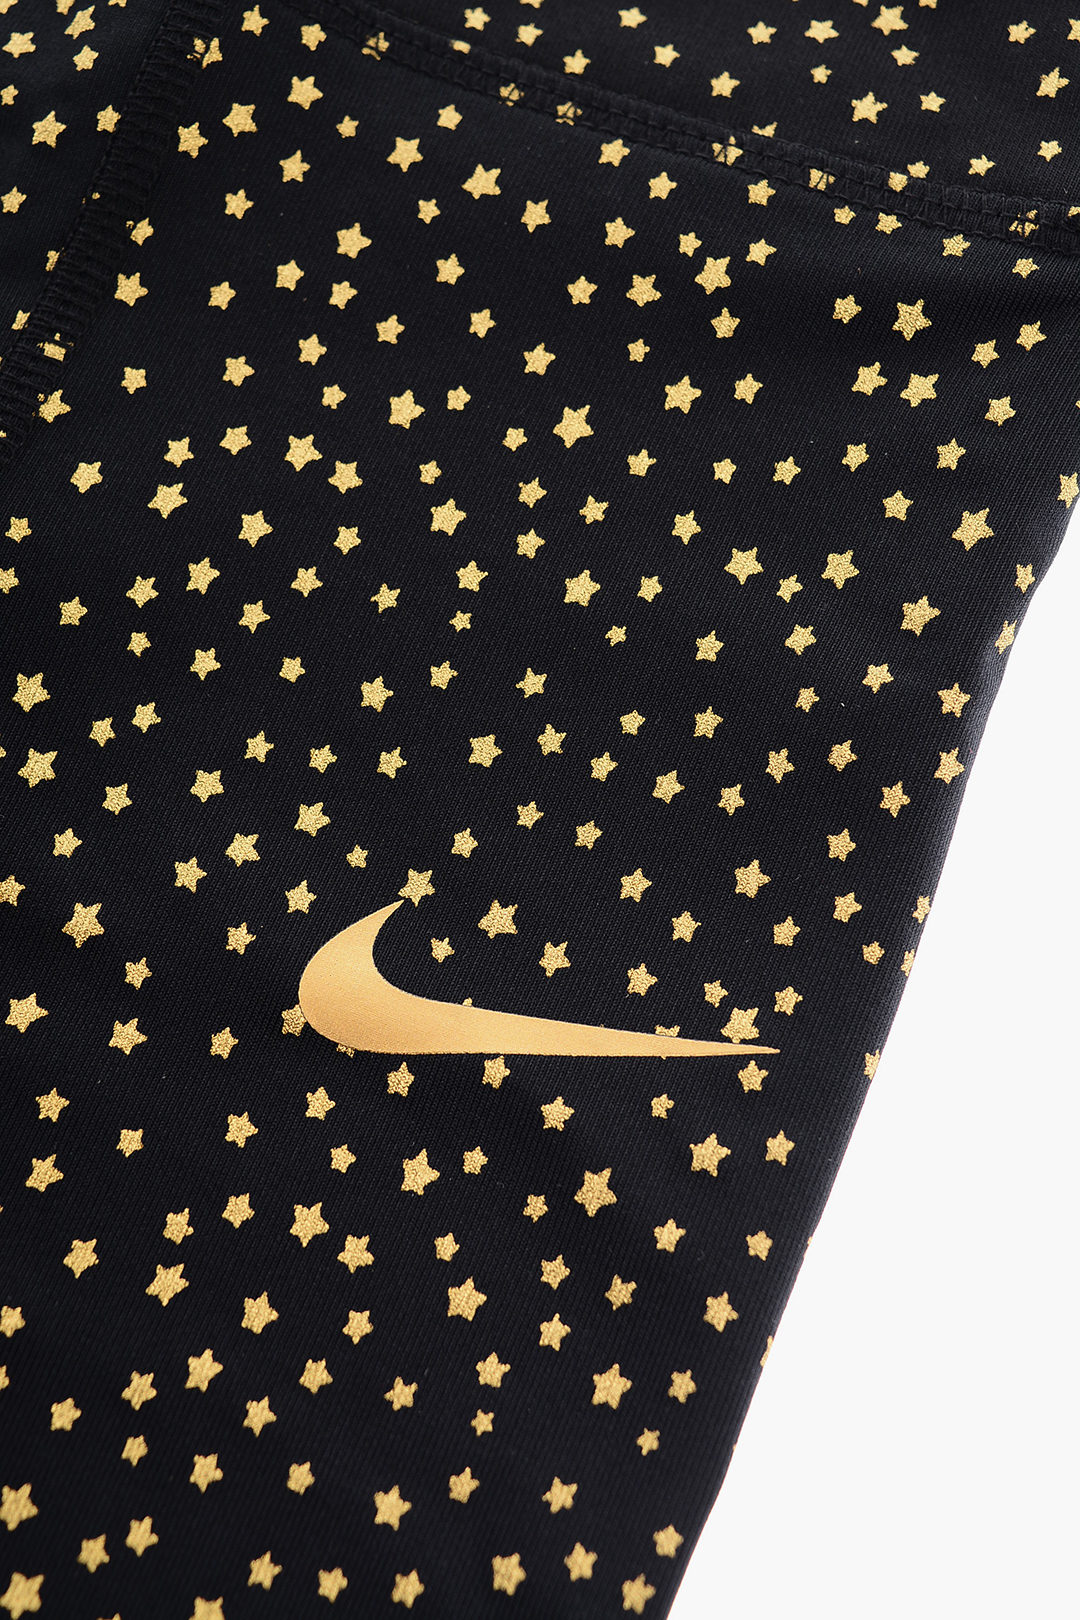 Nike KIDS All-Over Golden Stars Leggings girls - Glamood Outlet